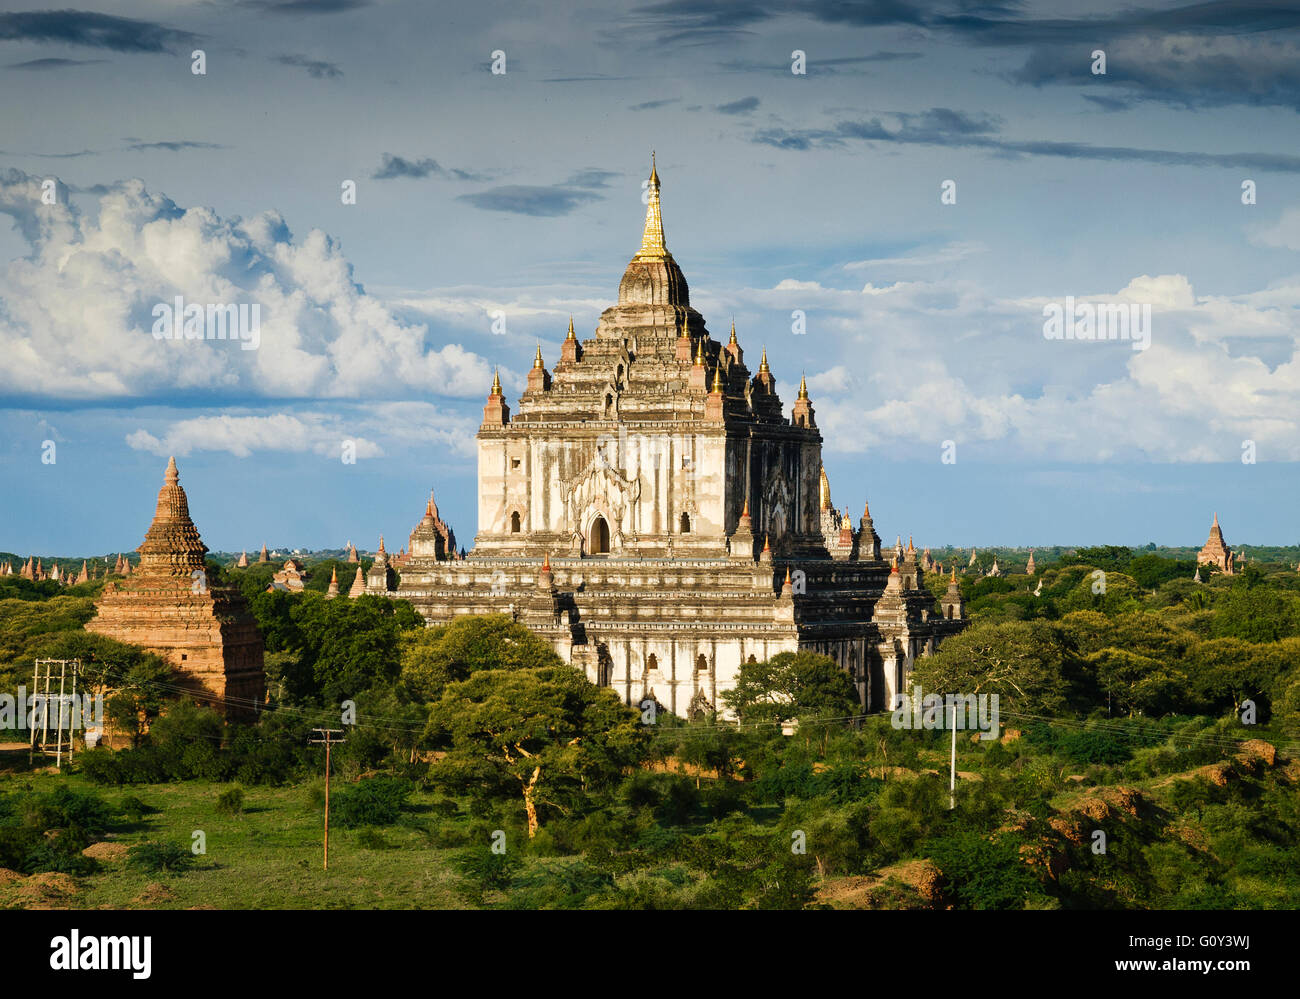 Ananda Temple, Bagan, Mandalay, Myanmar Stock Photo